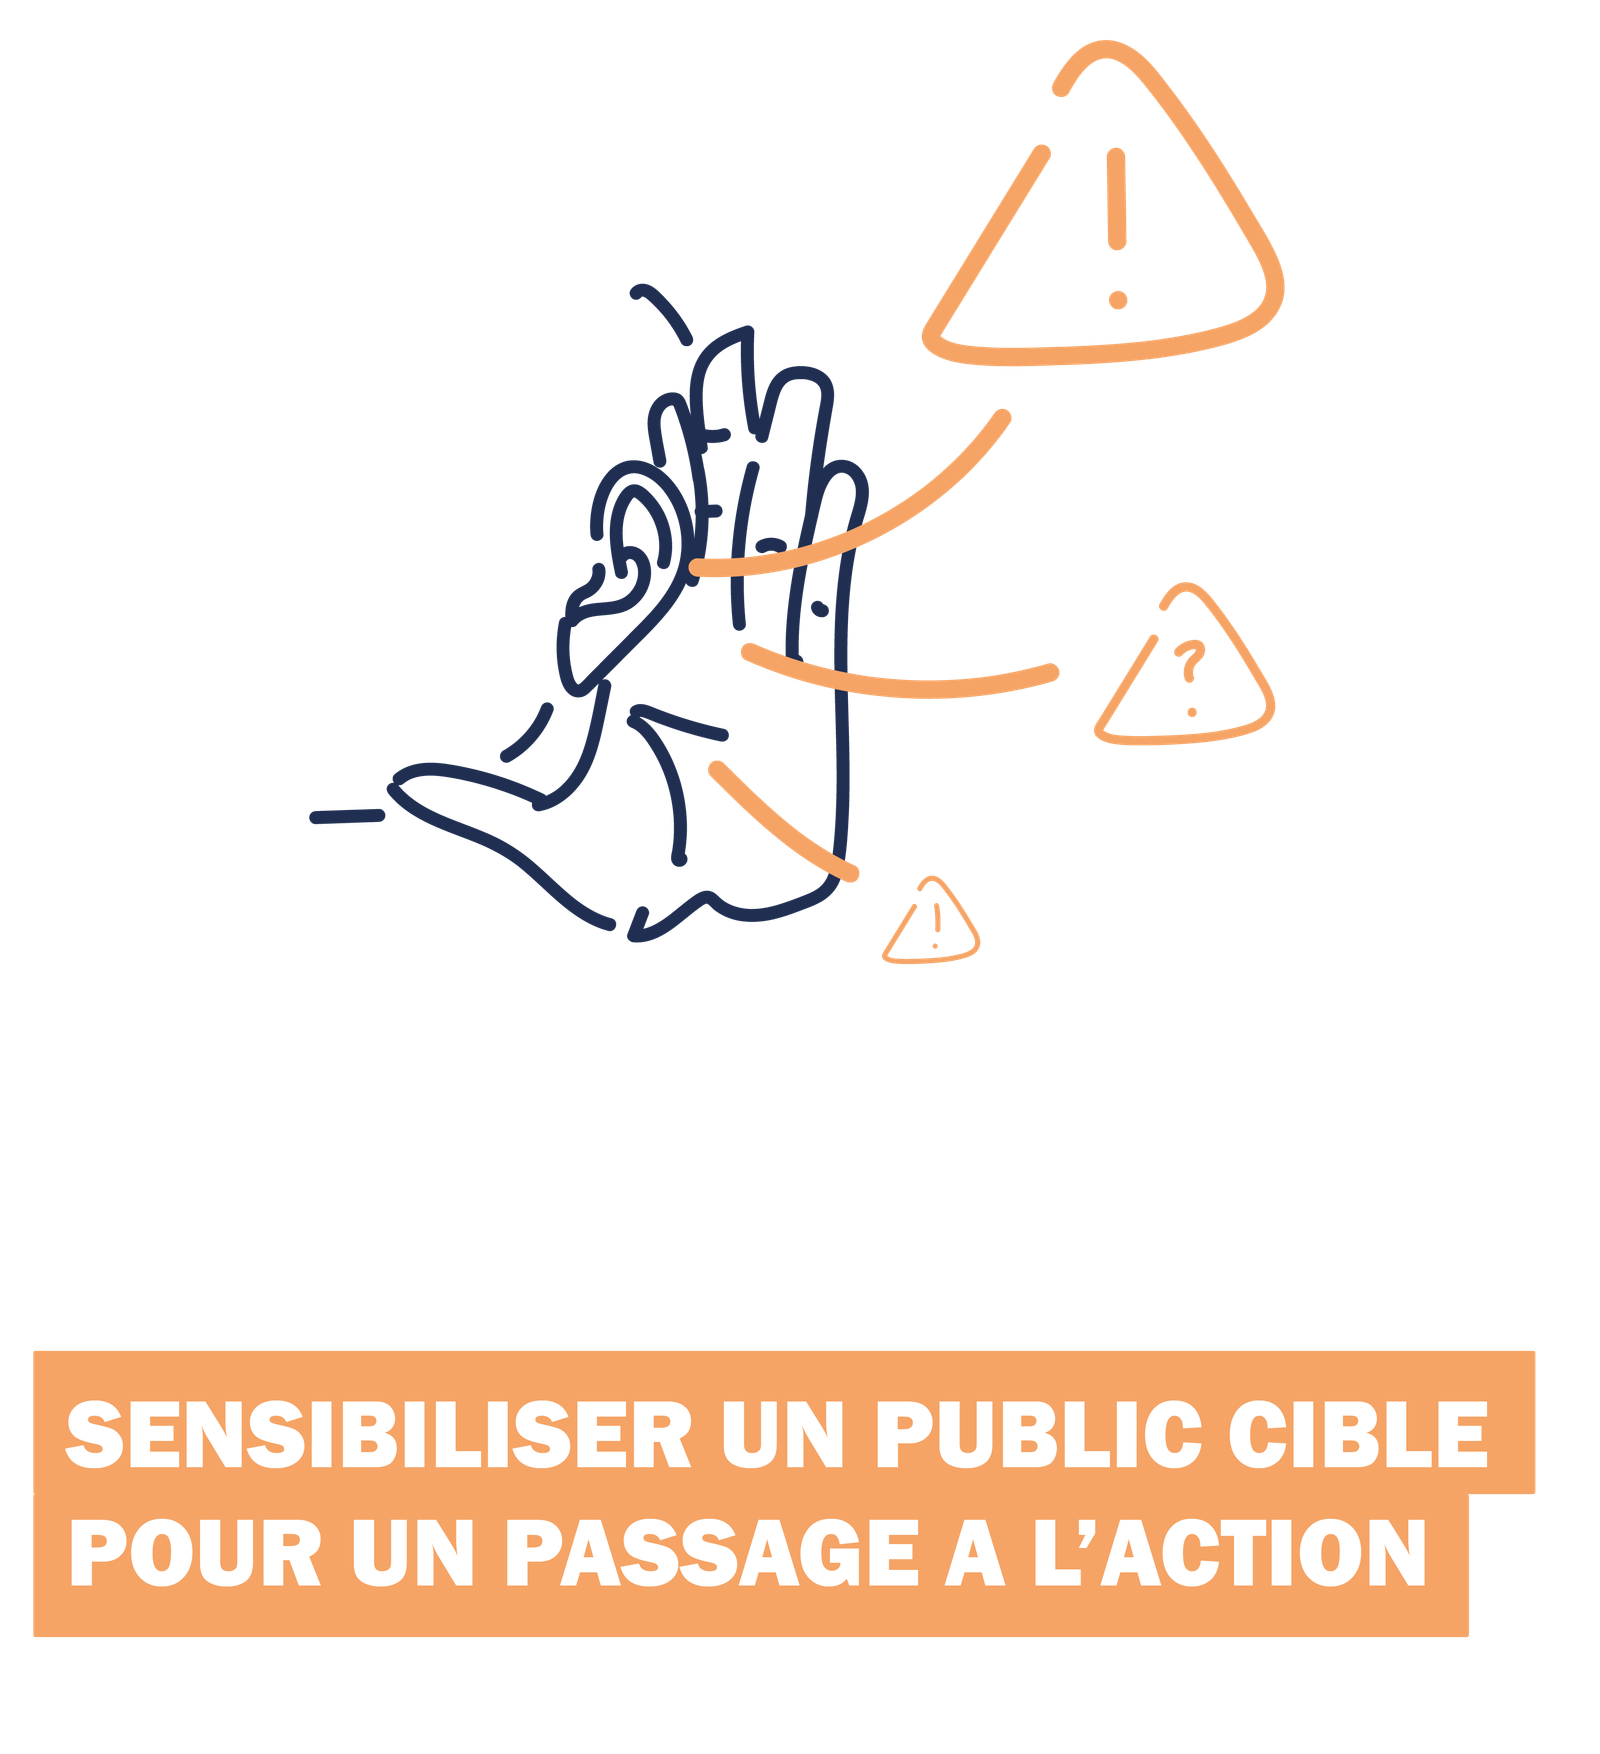 illustration d'une oreille à l'écoute des risques avec le titre "SENSIBILISER UN PUBLIC CIBLE POUR UN PASSAGE A L'ACTION"